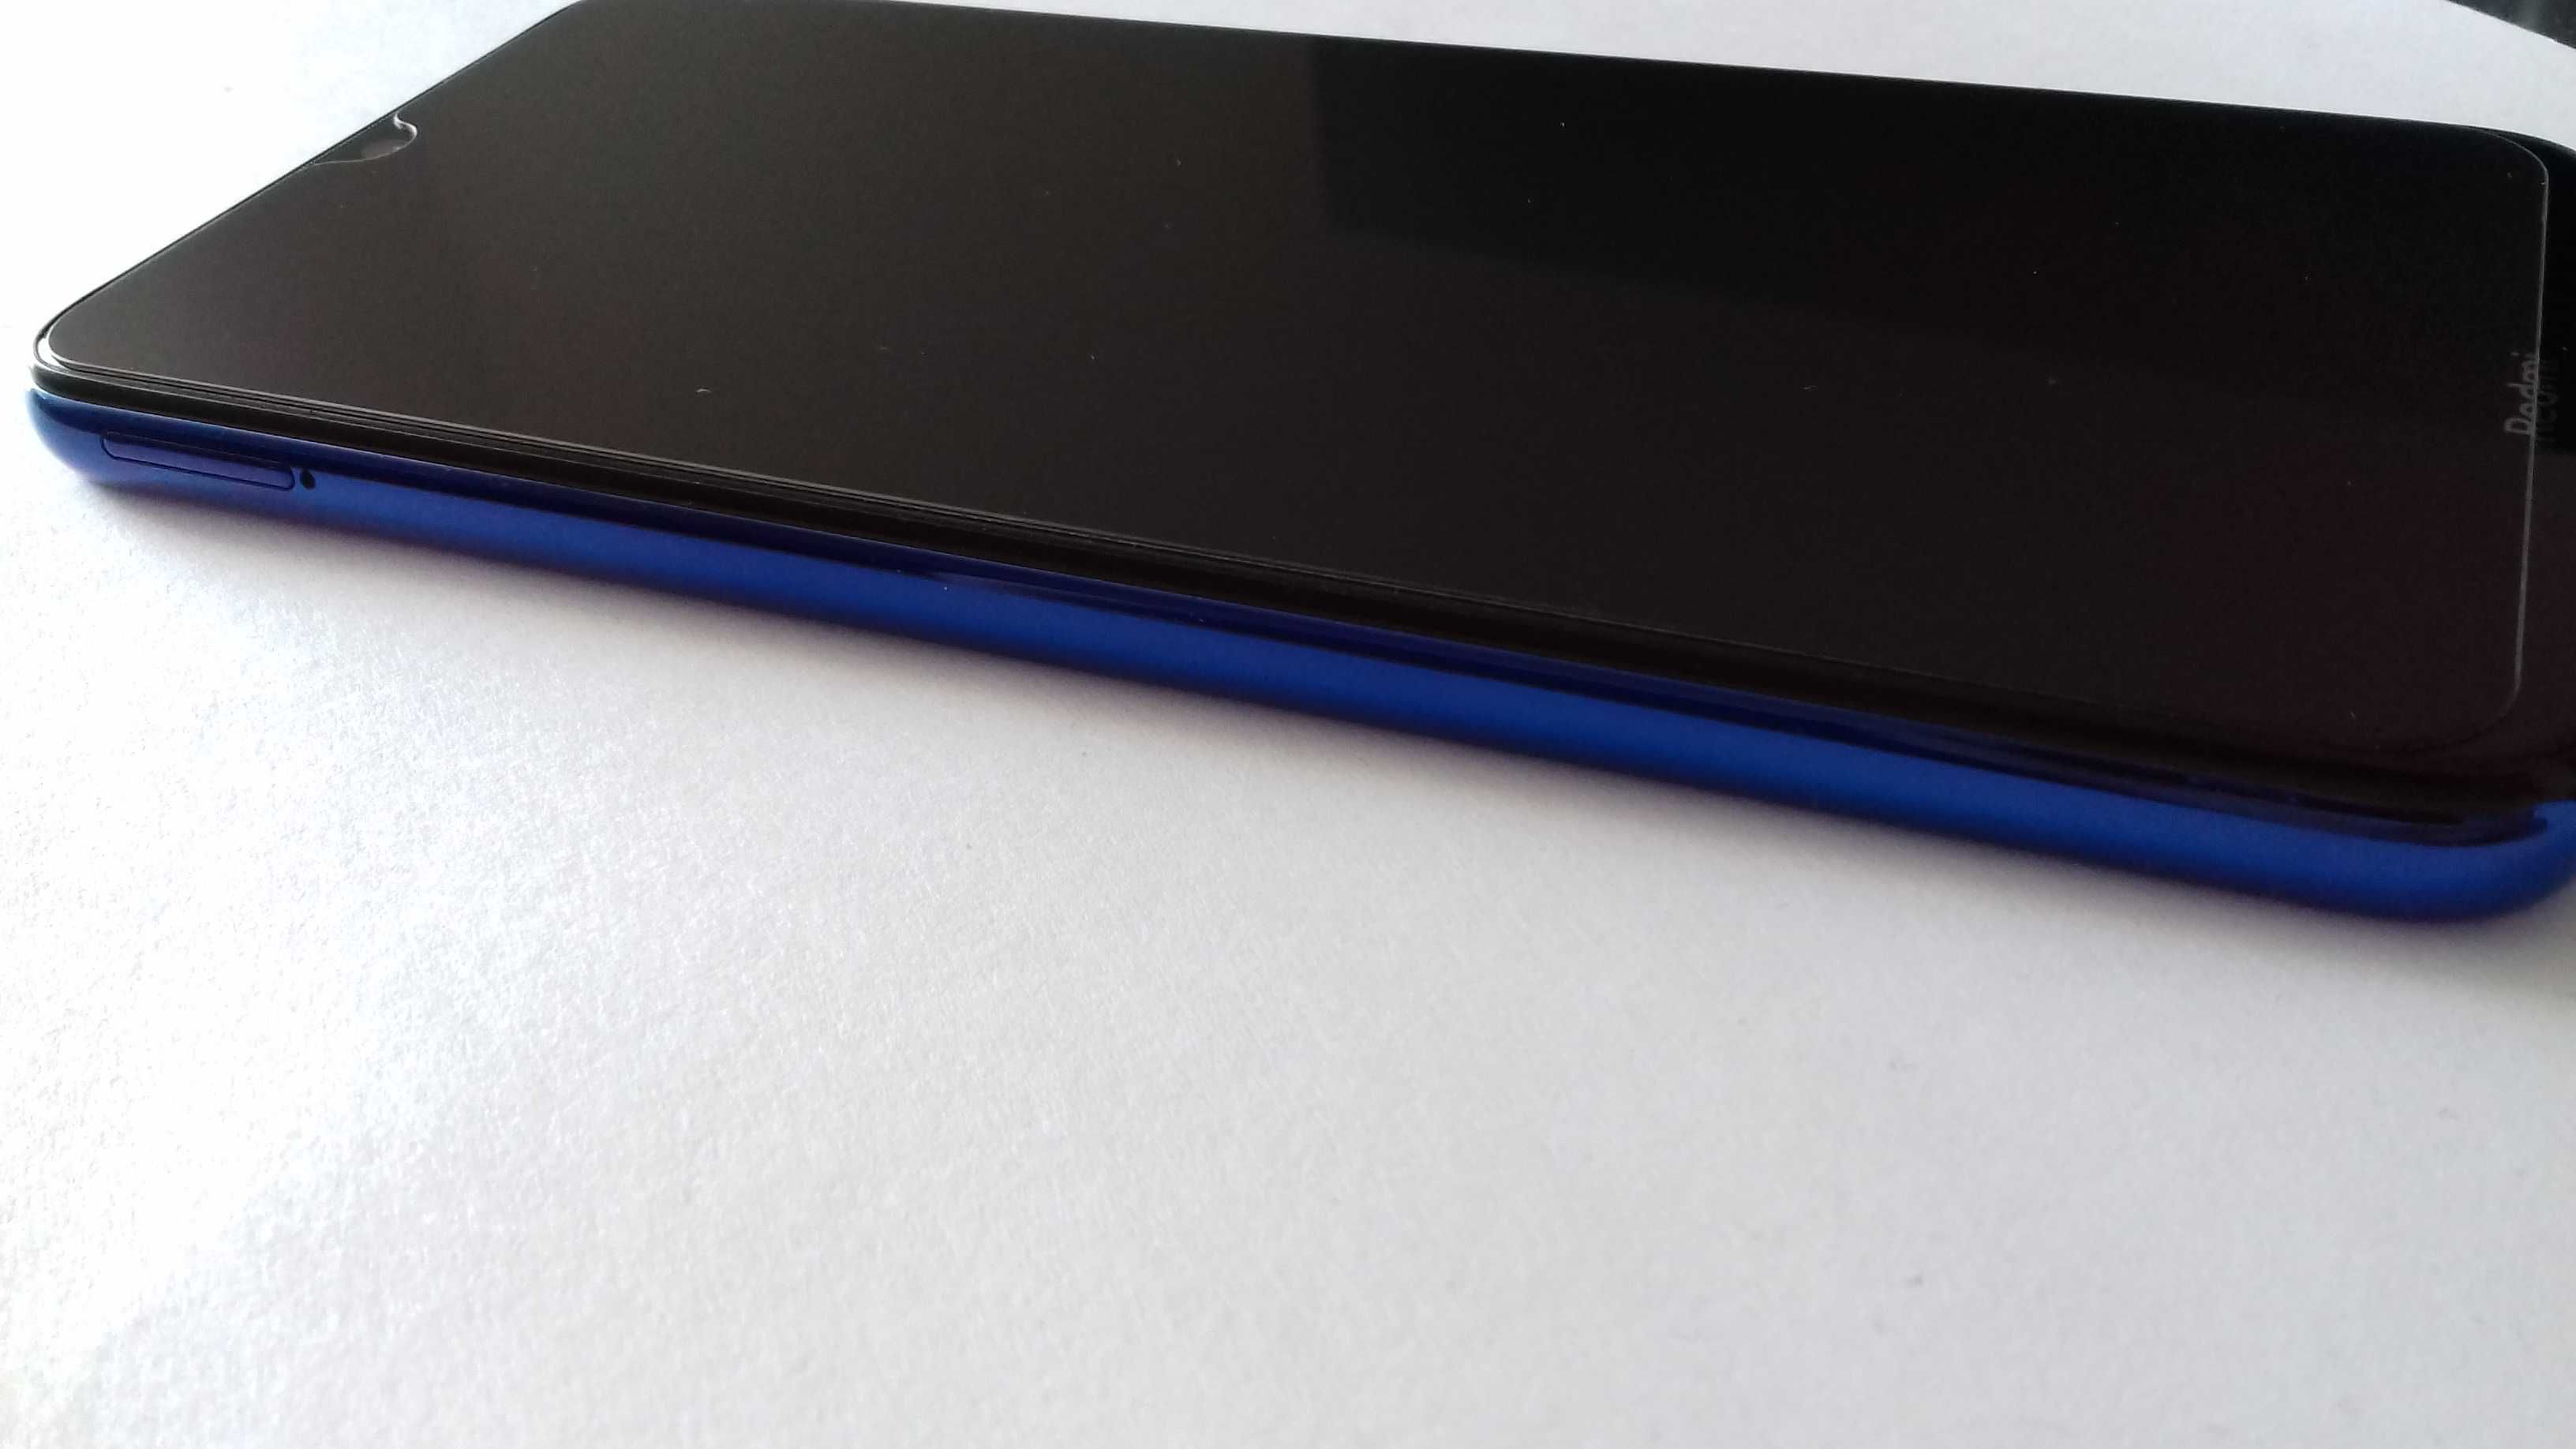 Smartfon Xiaomi Redmi Note 8T 4 GB / 128 GB niebieski